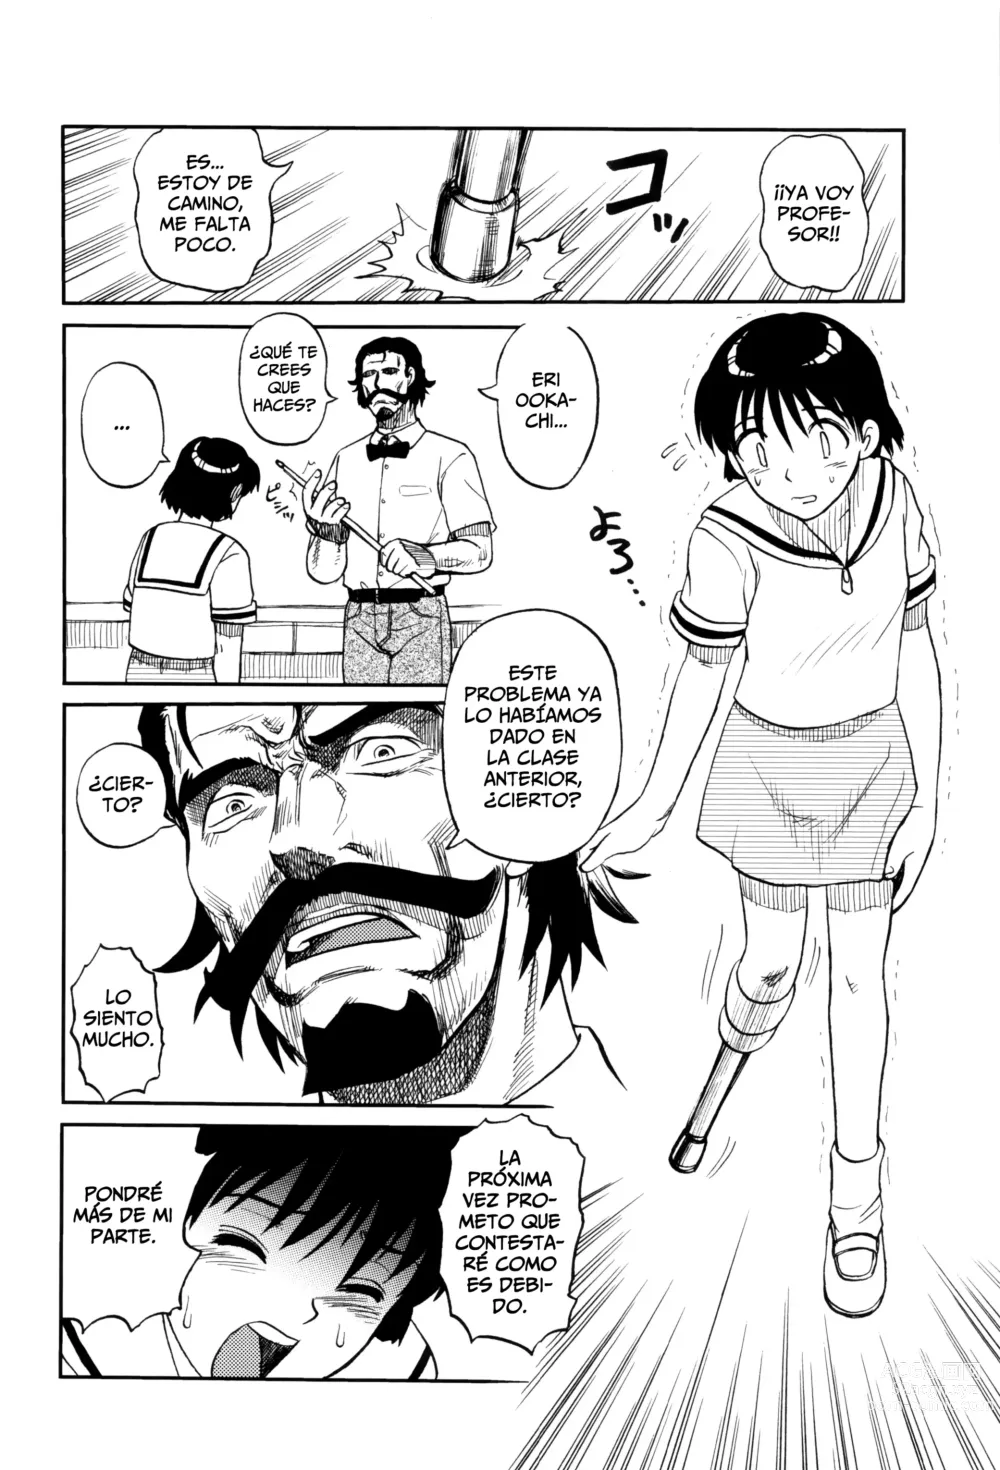 Page 4 of manga El Profesor Salvador Dice Que La Letra Con Sangre Entra